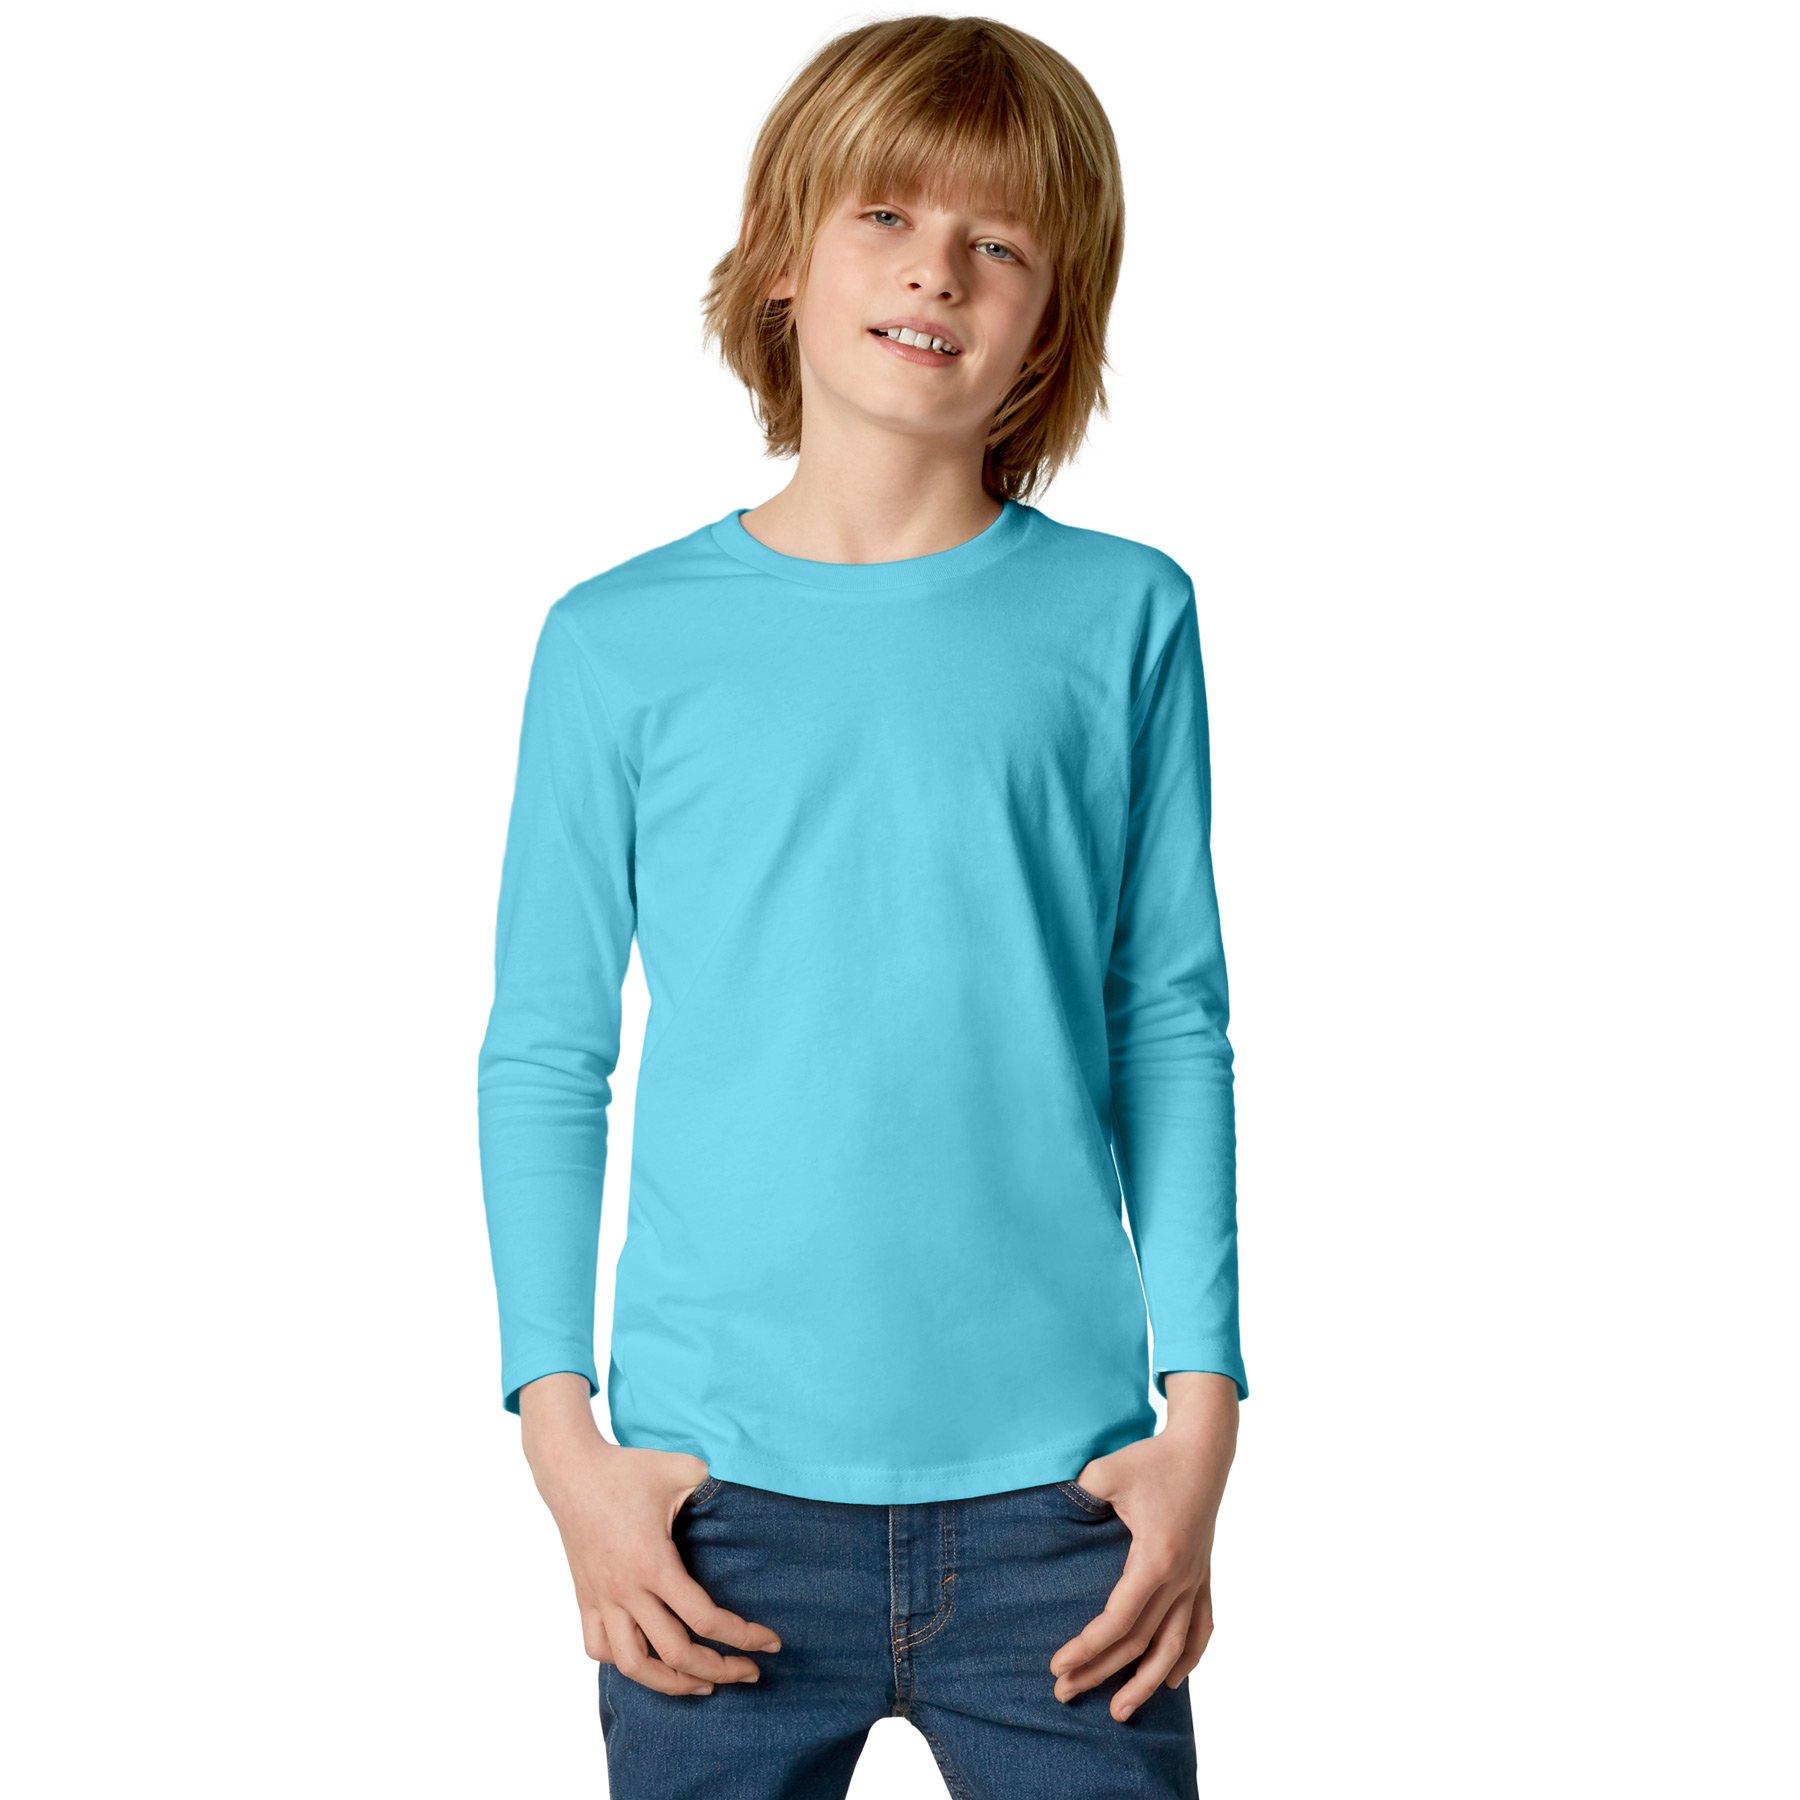 Langarm-shirt Kinder Jungen Hellblau 128 von Tectake